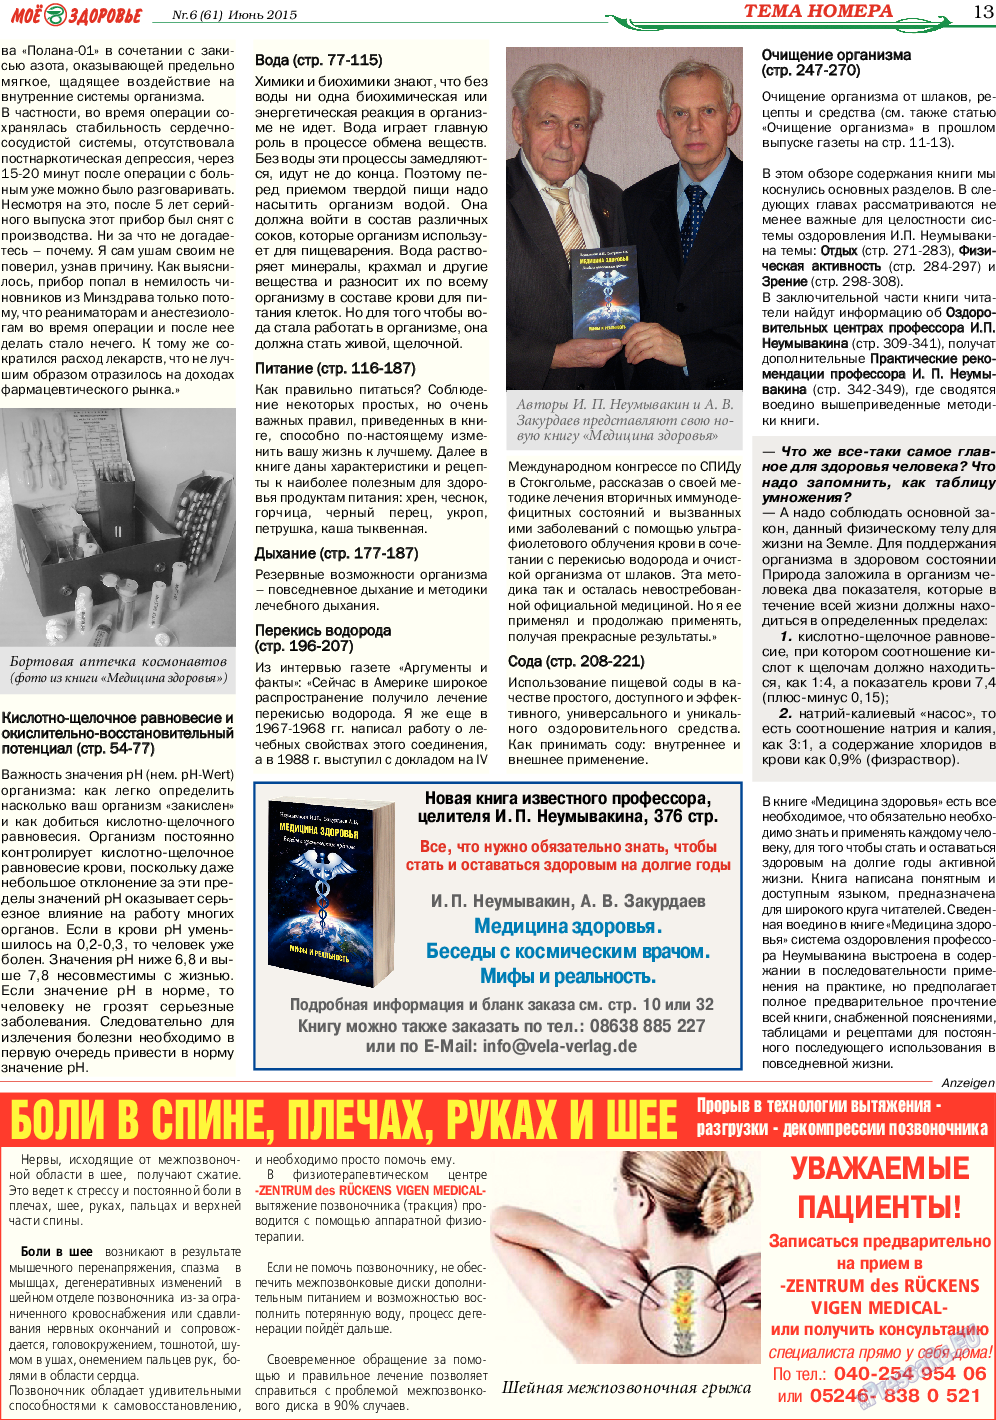 Кругозор, газета. 2015 №6 стр.13